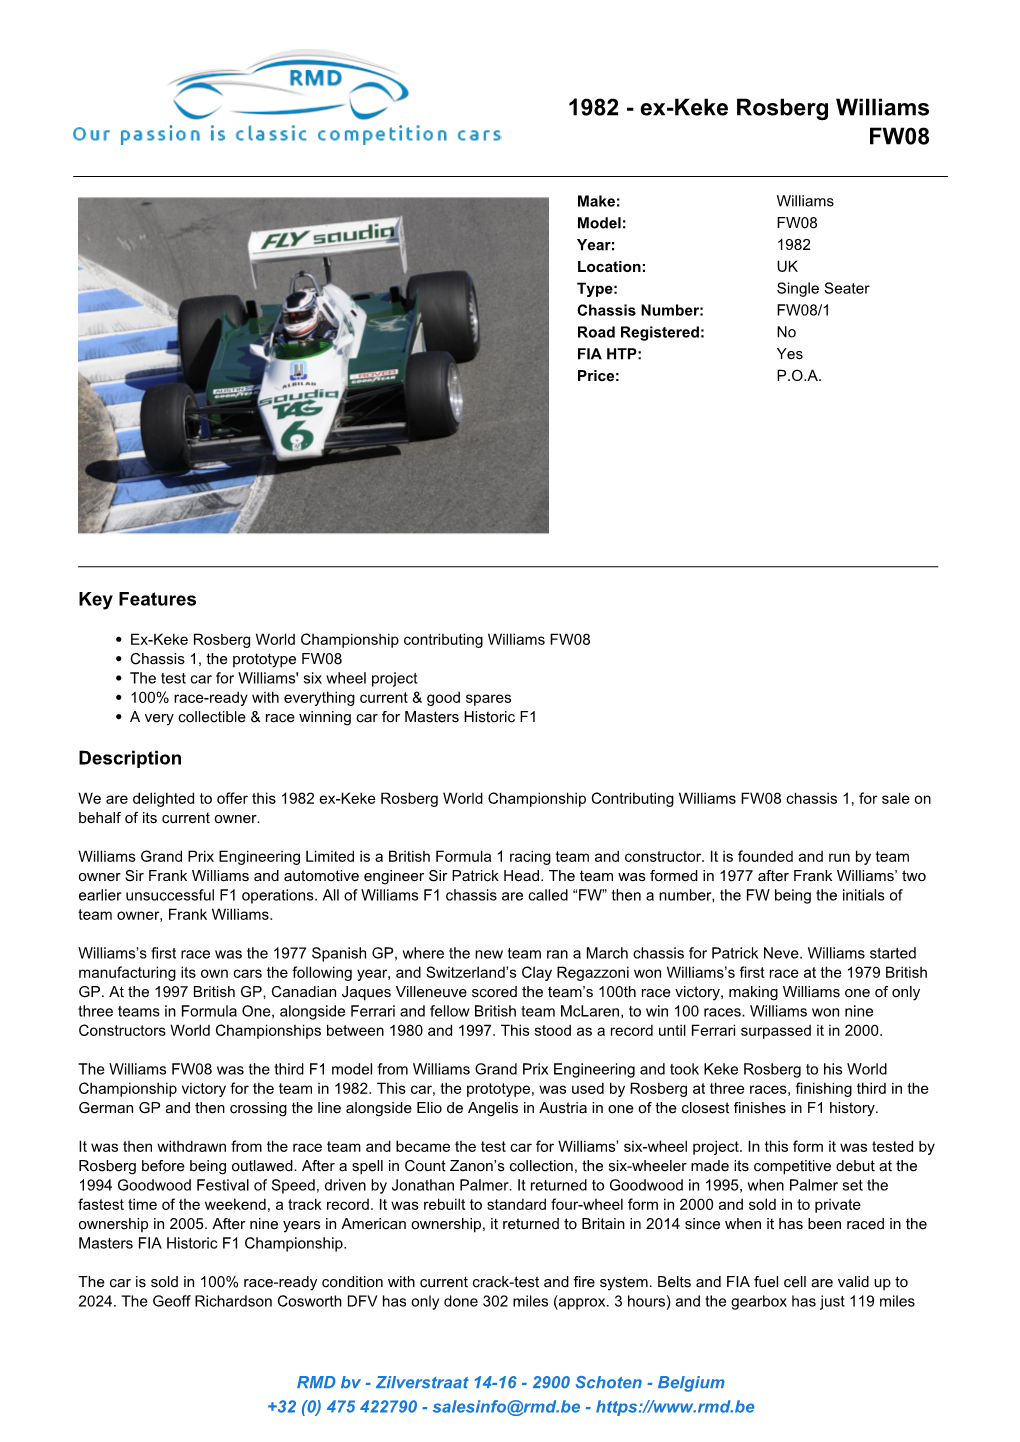 Ex-Keke Rosberg Williams FW08